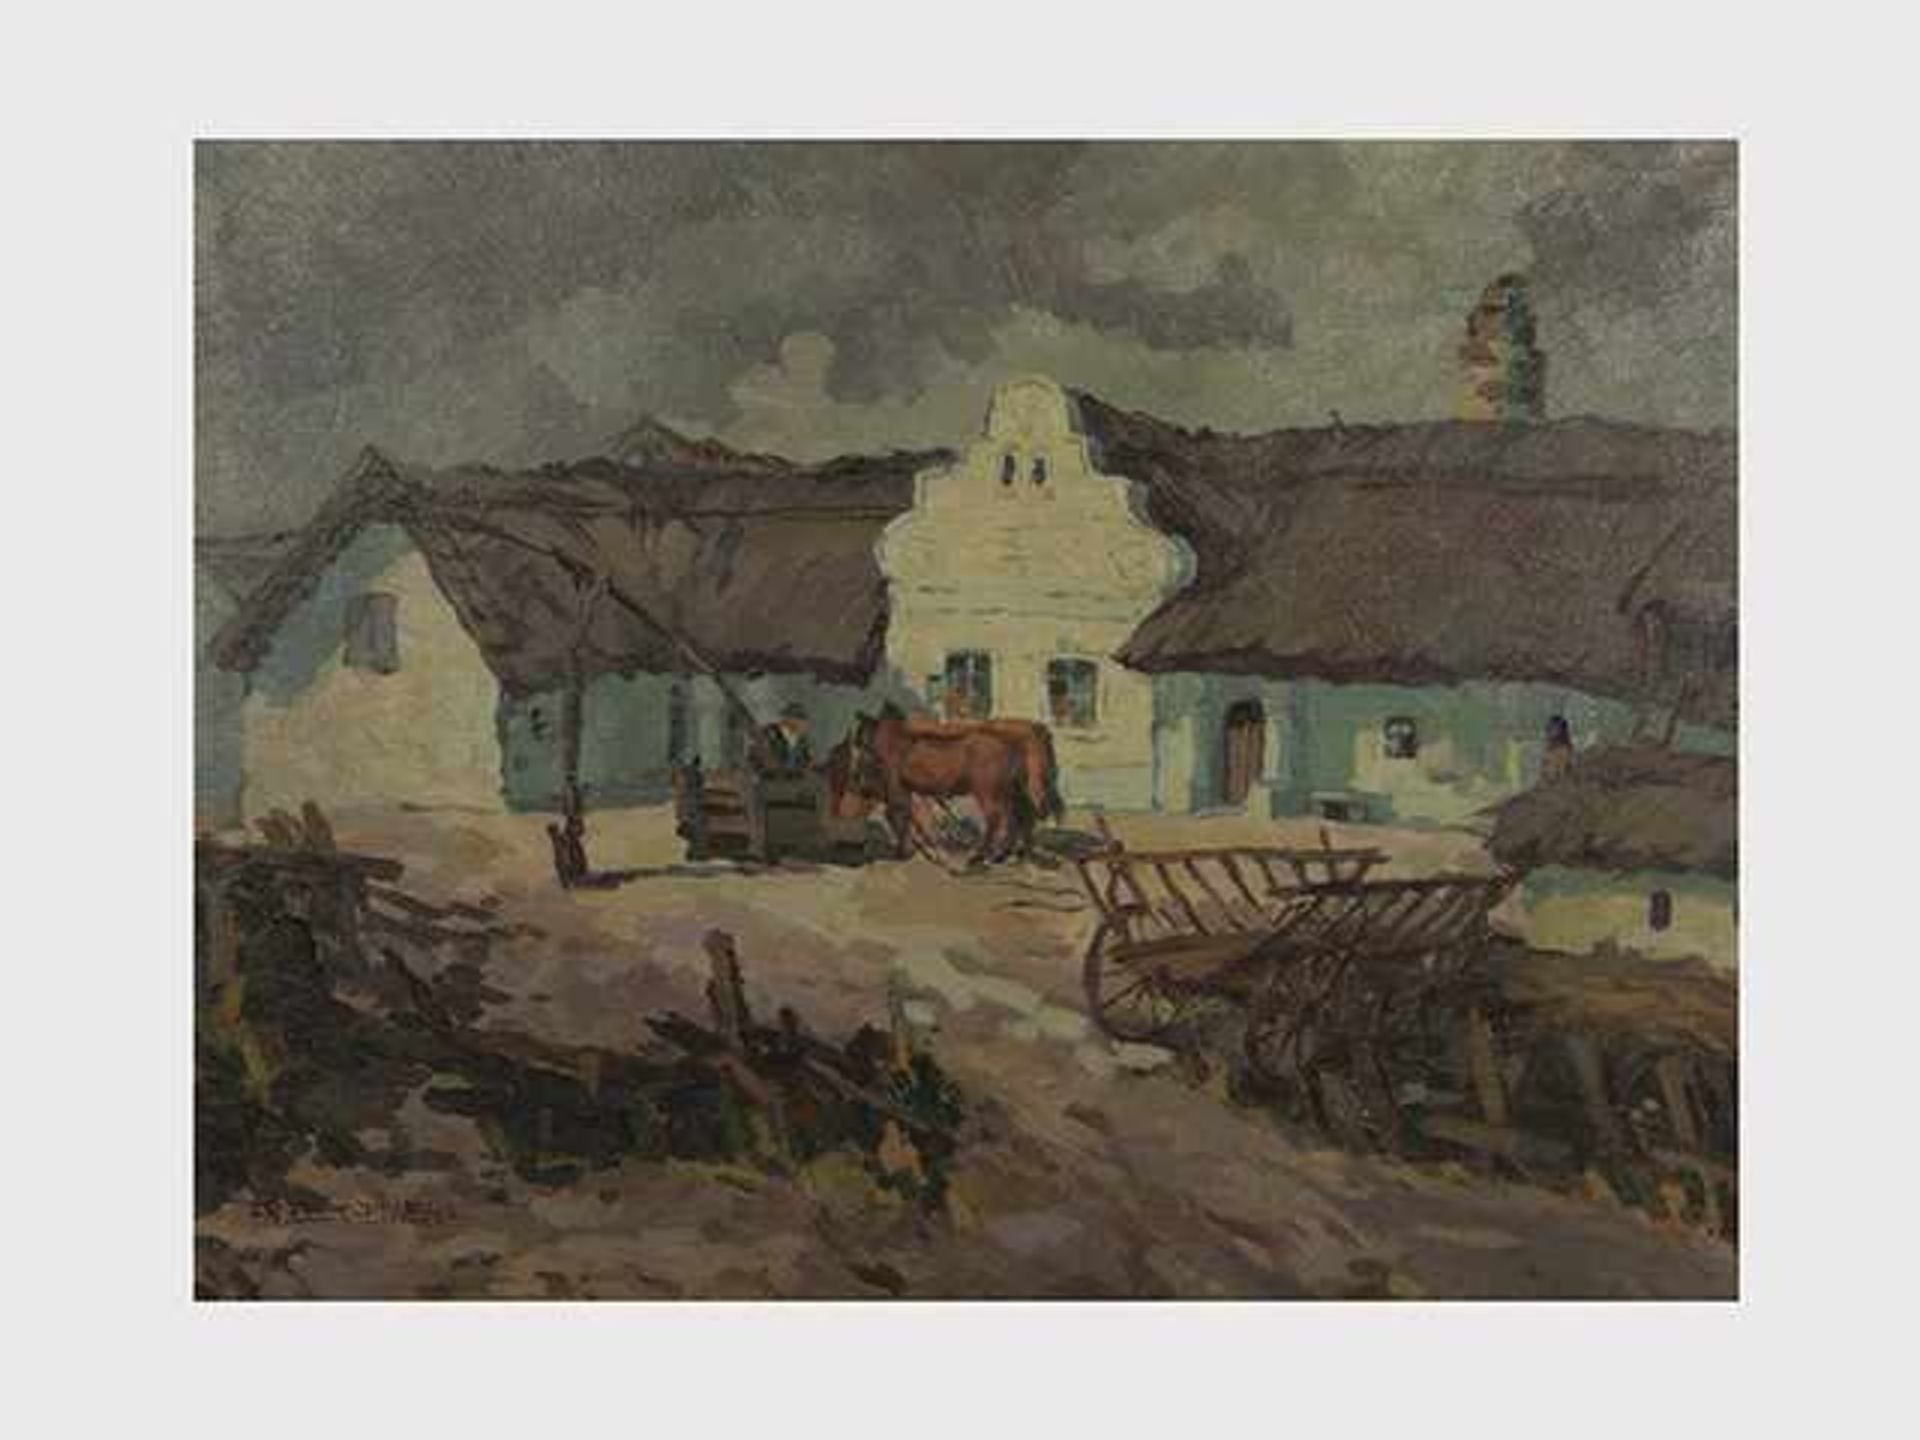 Franz Elek-Eiweg (1883-1959 Eisenstadt) Illmitz, Öl auf Leinwand, signiert Fr. Elek-Eiweg, 64x84,